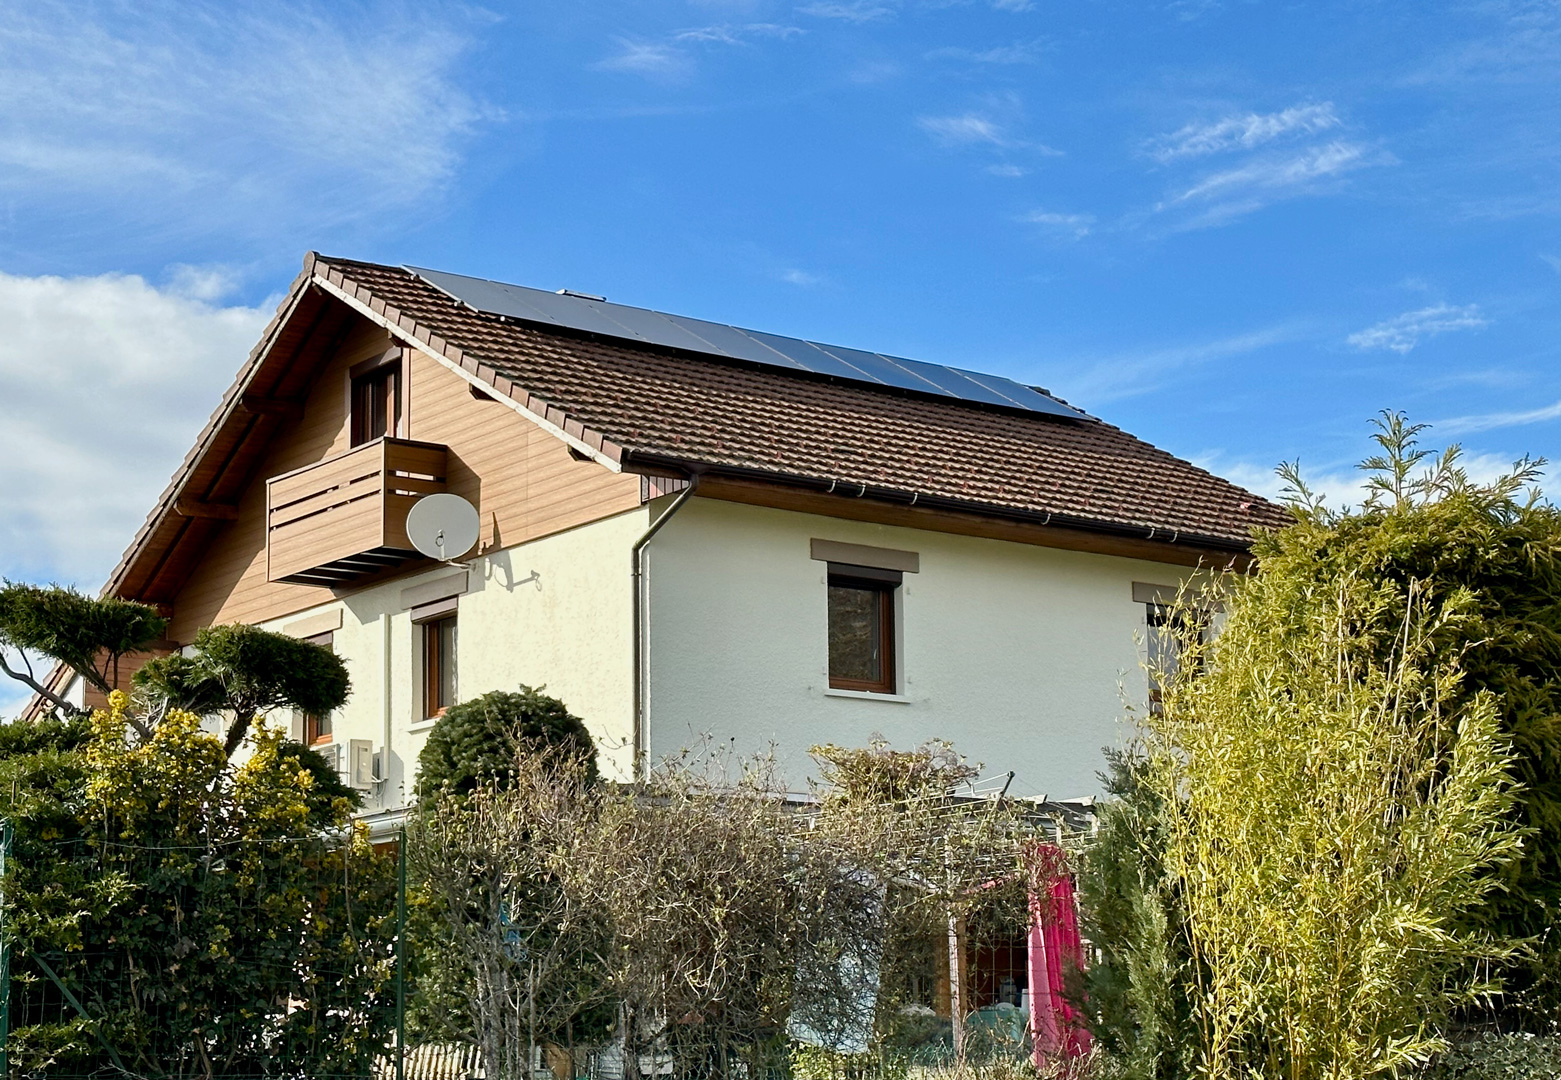 Installation de 8 panneaux photovoltaïques de 425 W chacun chez un particulier à Arbusigny en Haute-Savoie